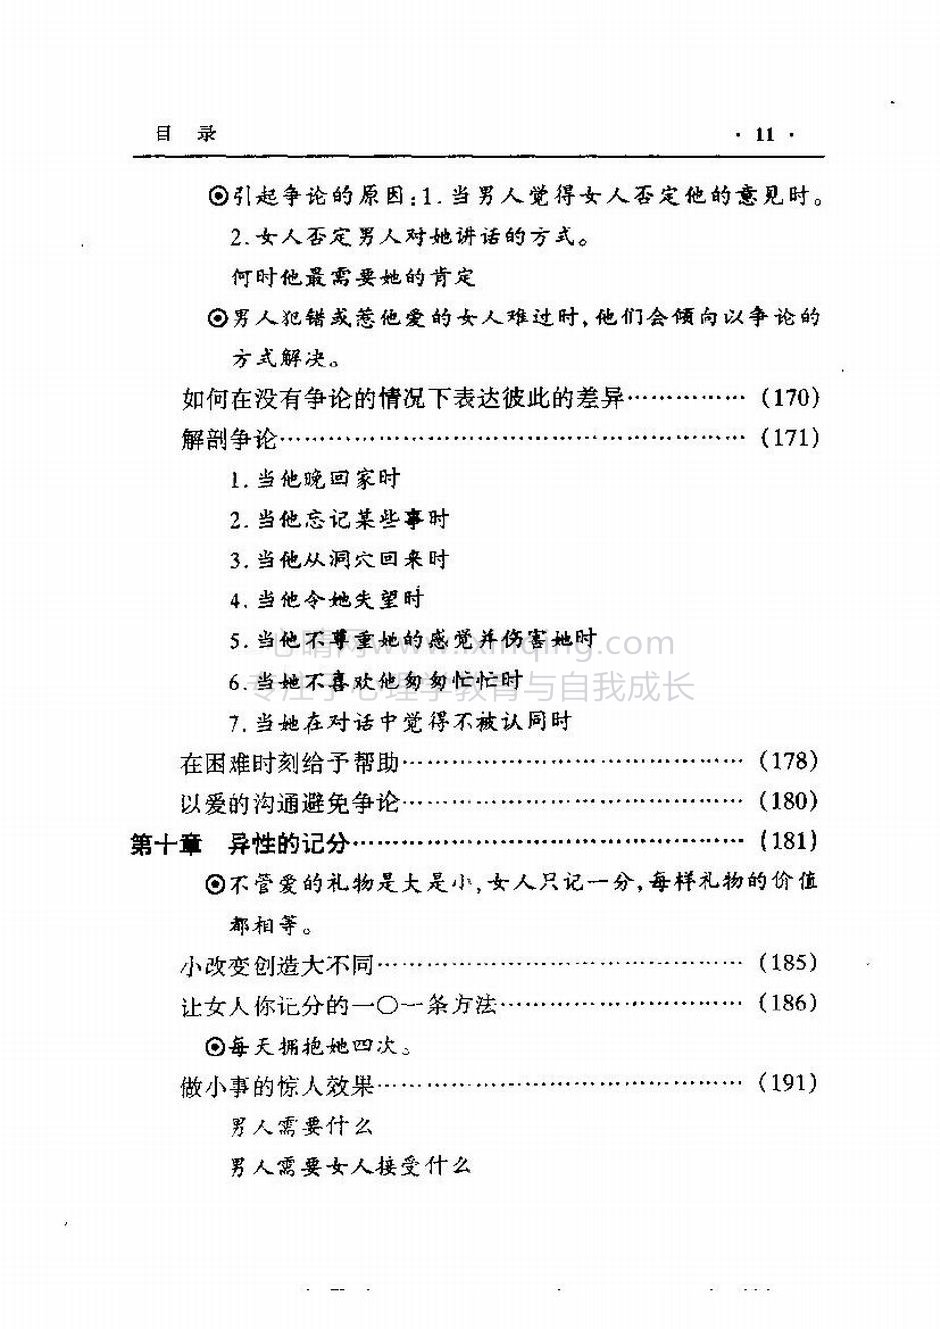 封面、原序、译序、中文版出版前言(30)